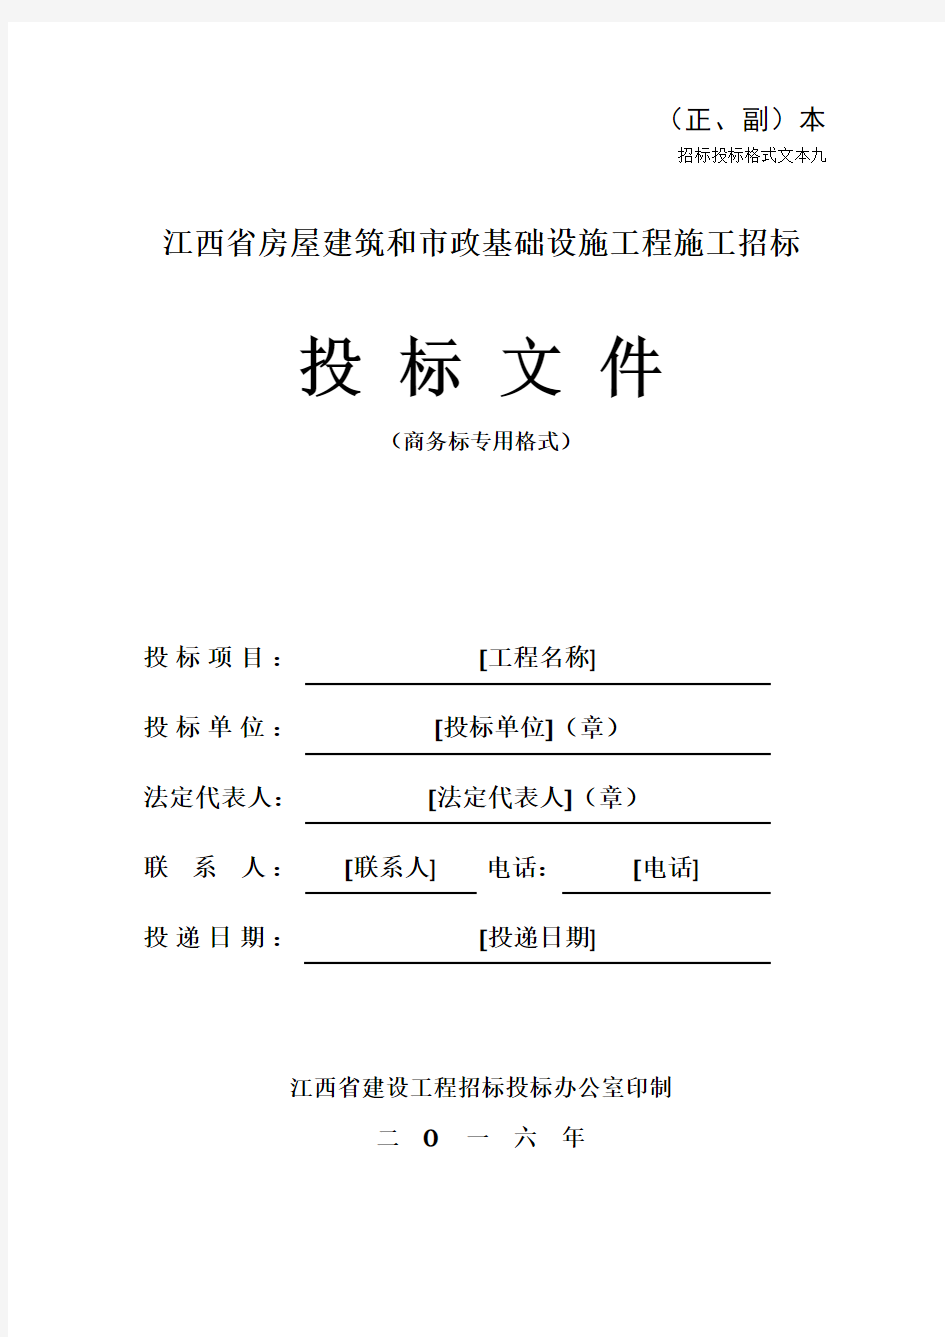 江西省房屋建筑和市政基础设施工程施工招标文件